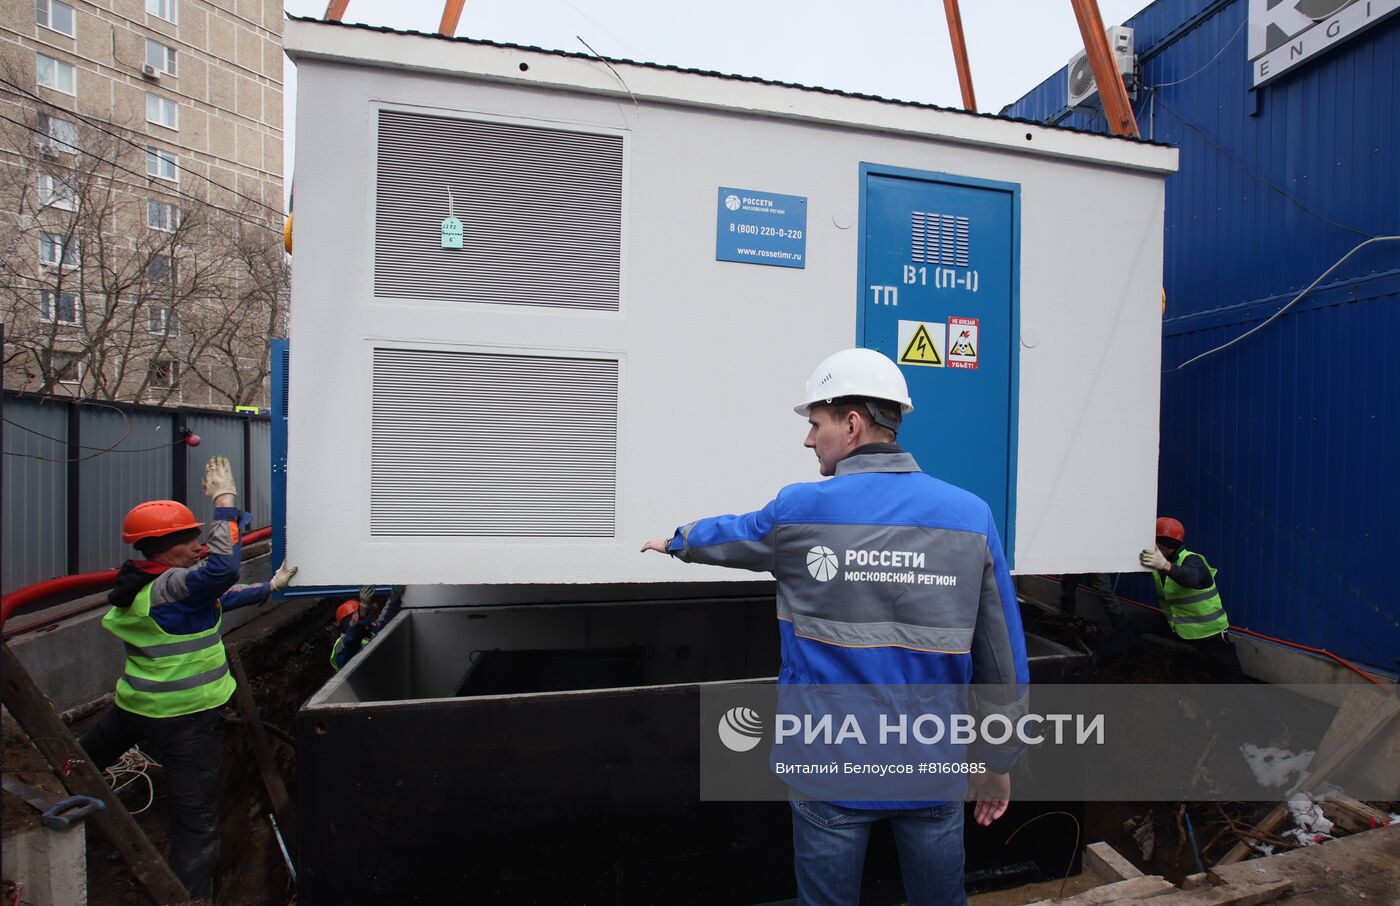 Технологическое присоединение к электрическим сетям новой поликлиники в Москве